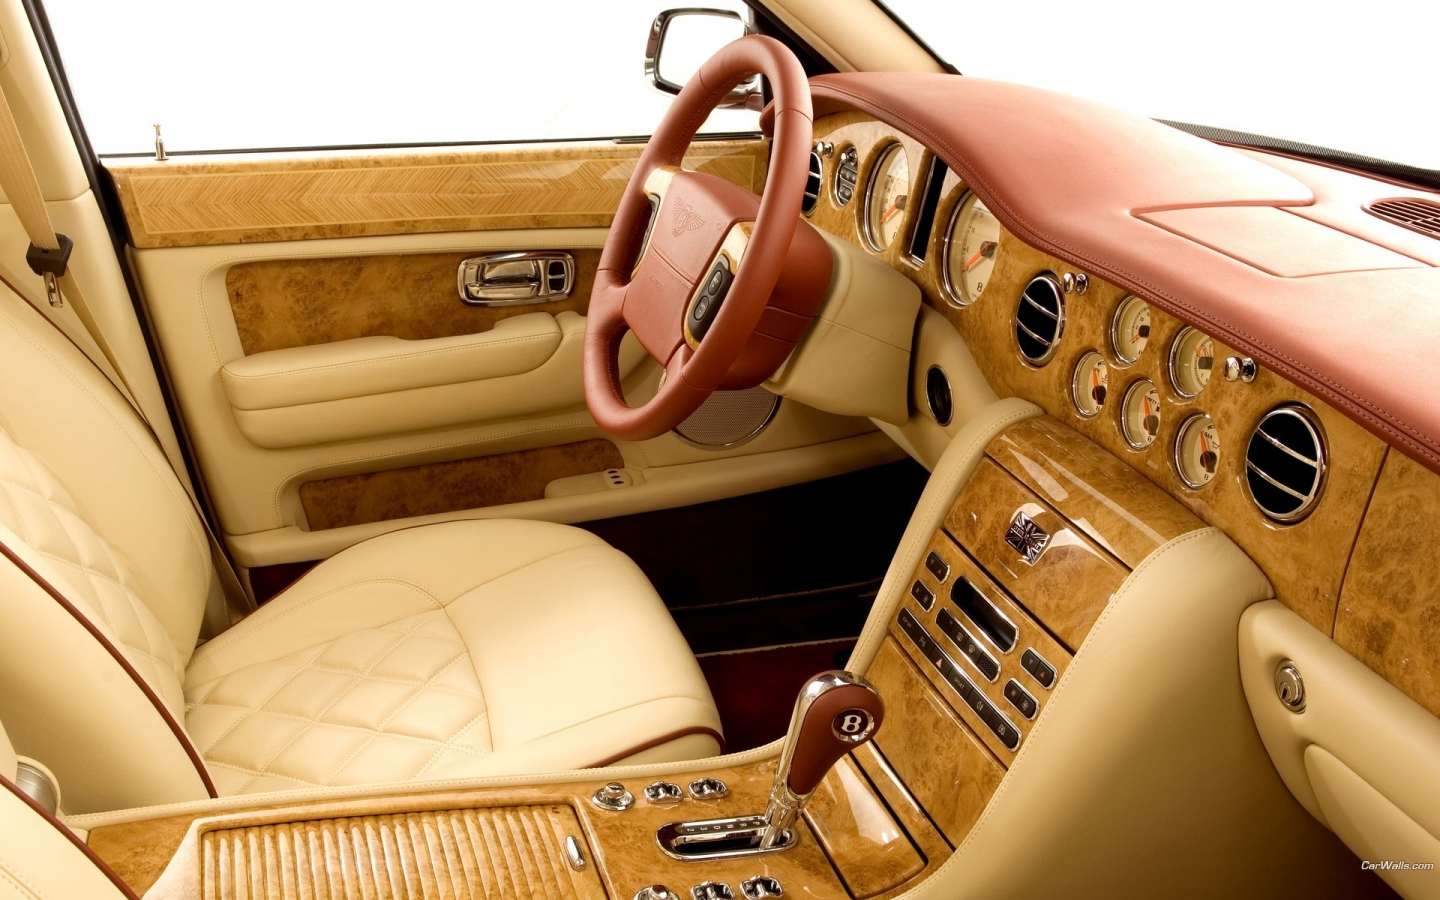 Luxury Bentley Interior for 1440 x 900 widescreen resolution